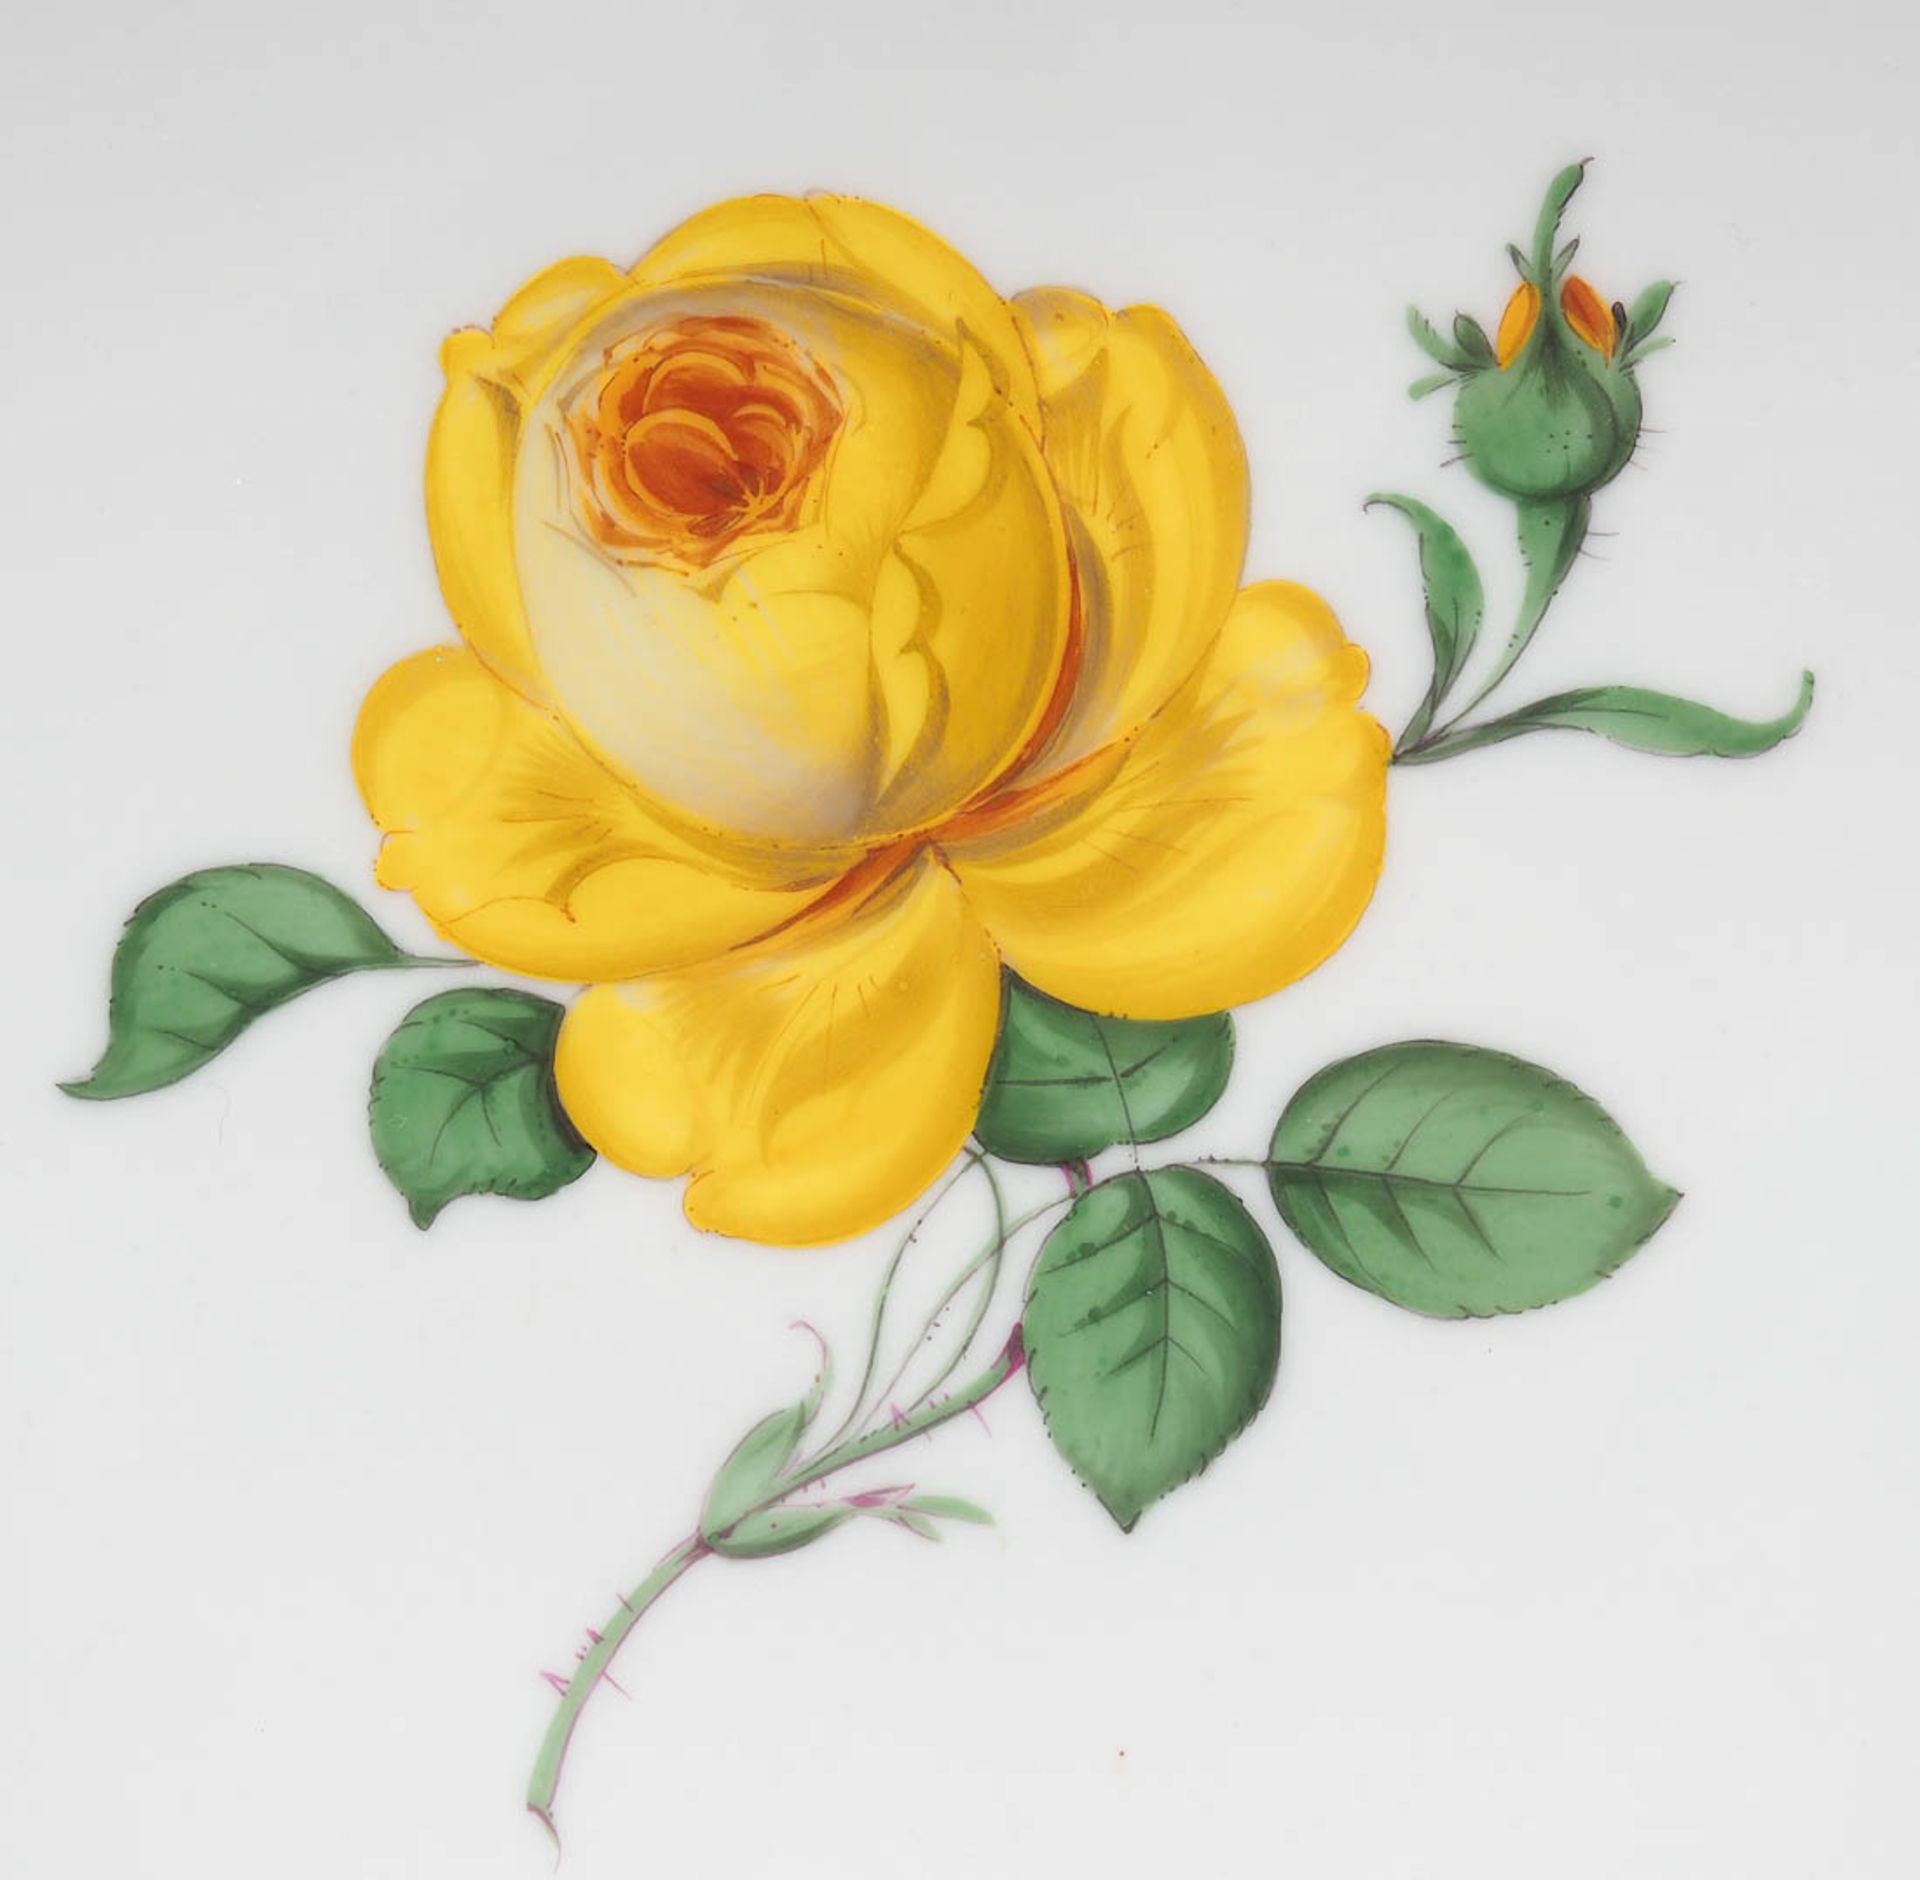 Tortenplatte, Meissen Form Neuer Ausschnitt, Dekor große gelbe Rose in polychromer Malerei, - Bild 2 aus 3